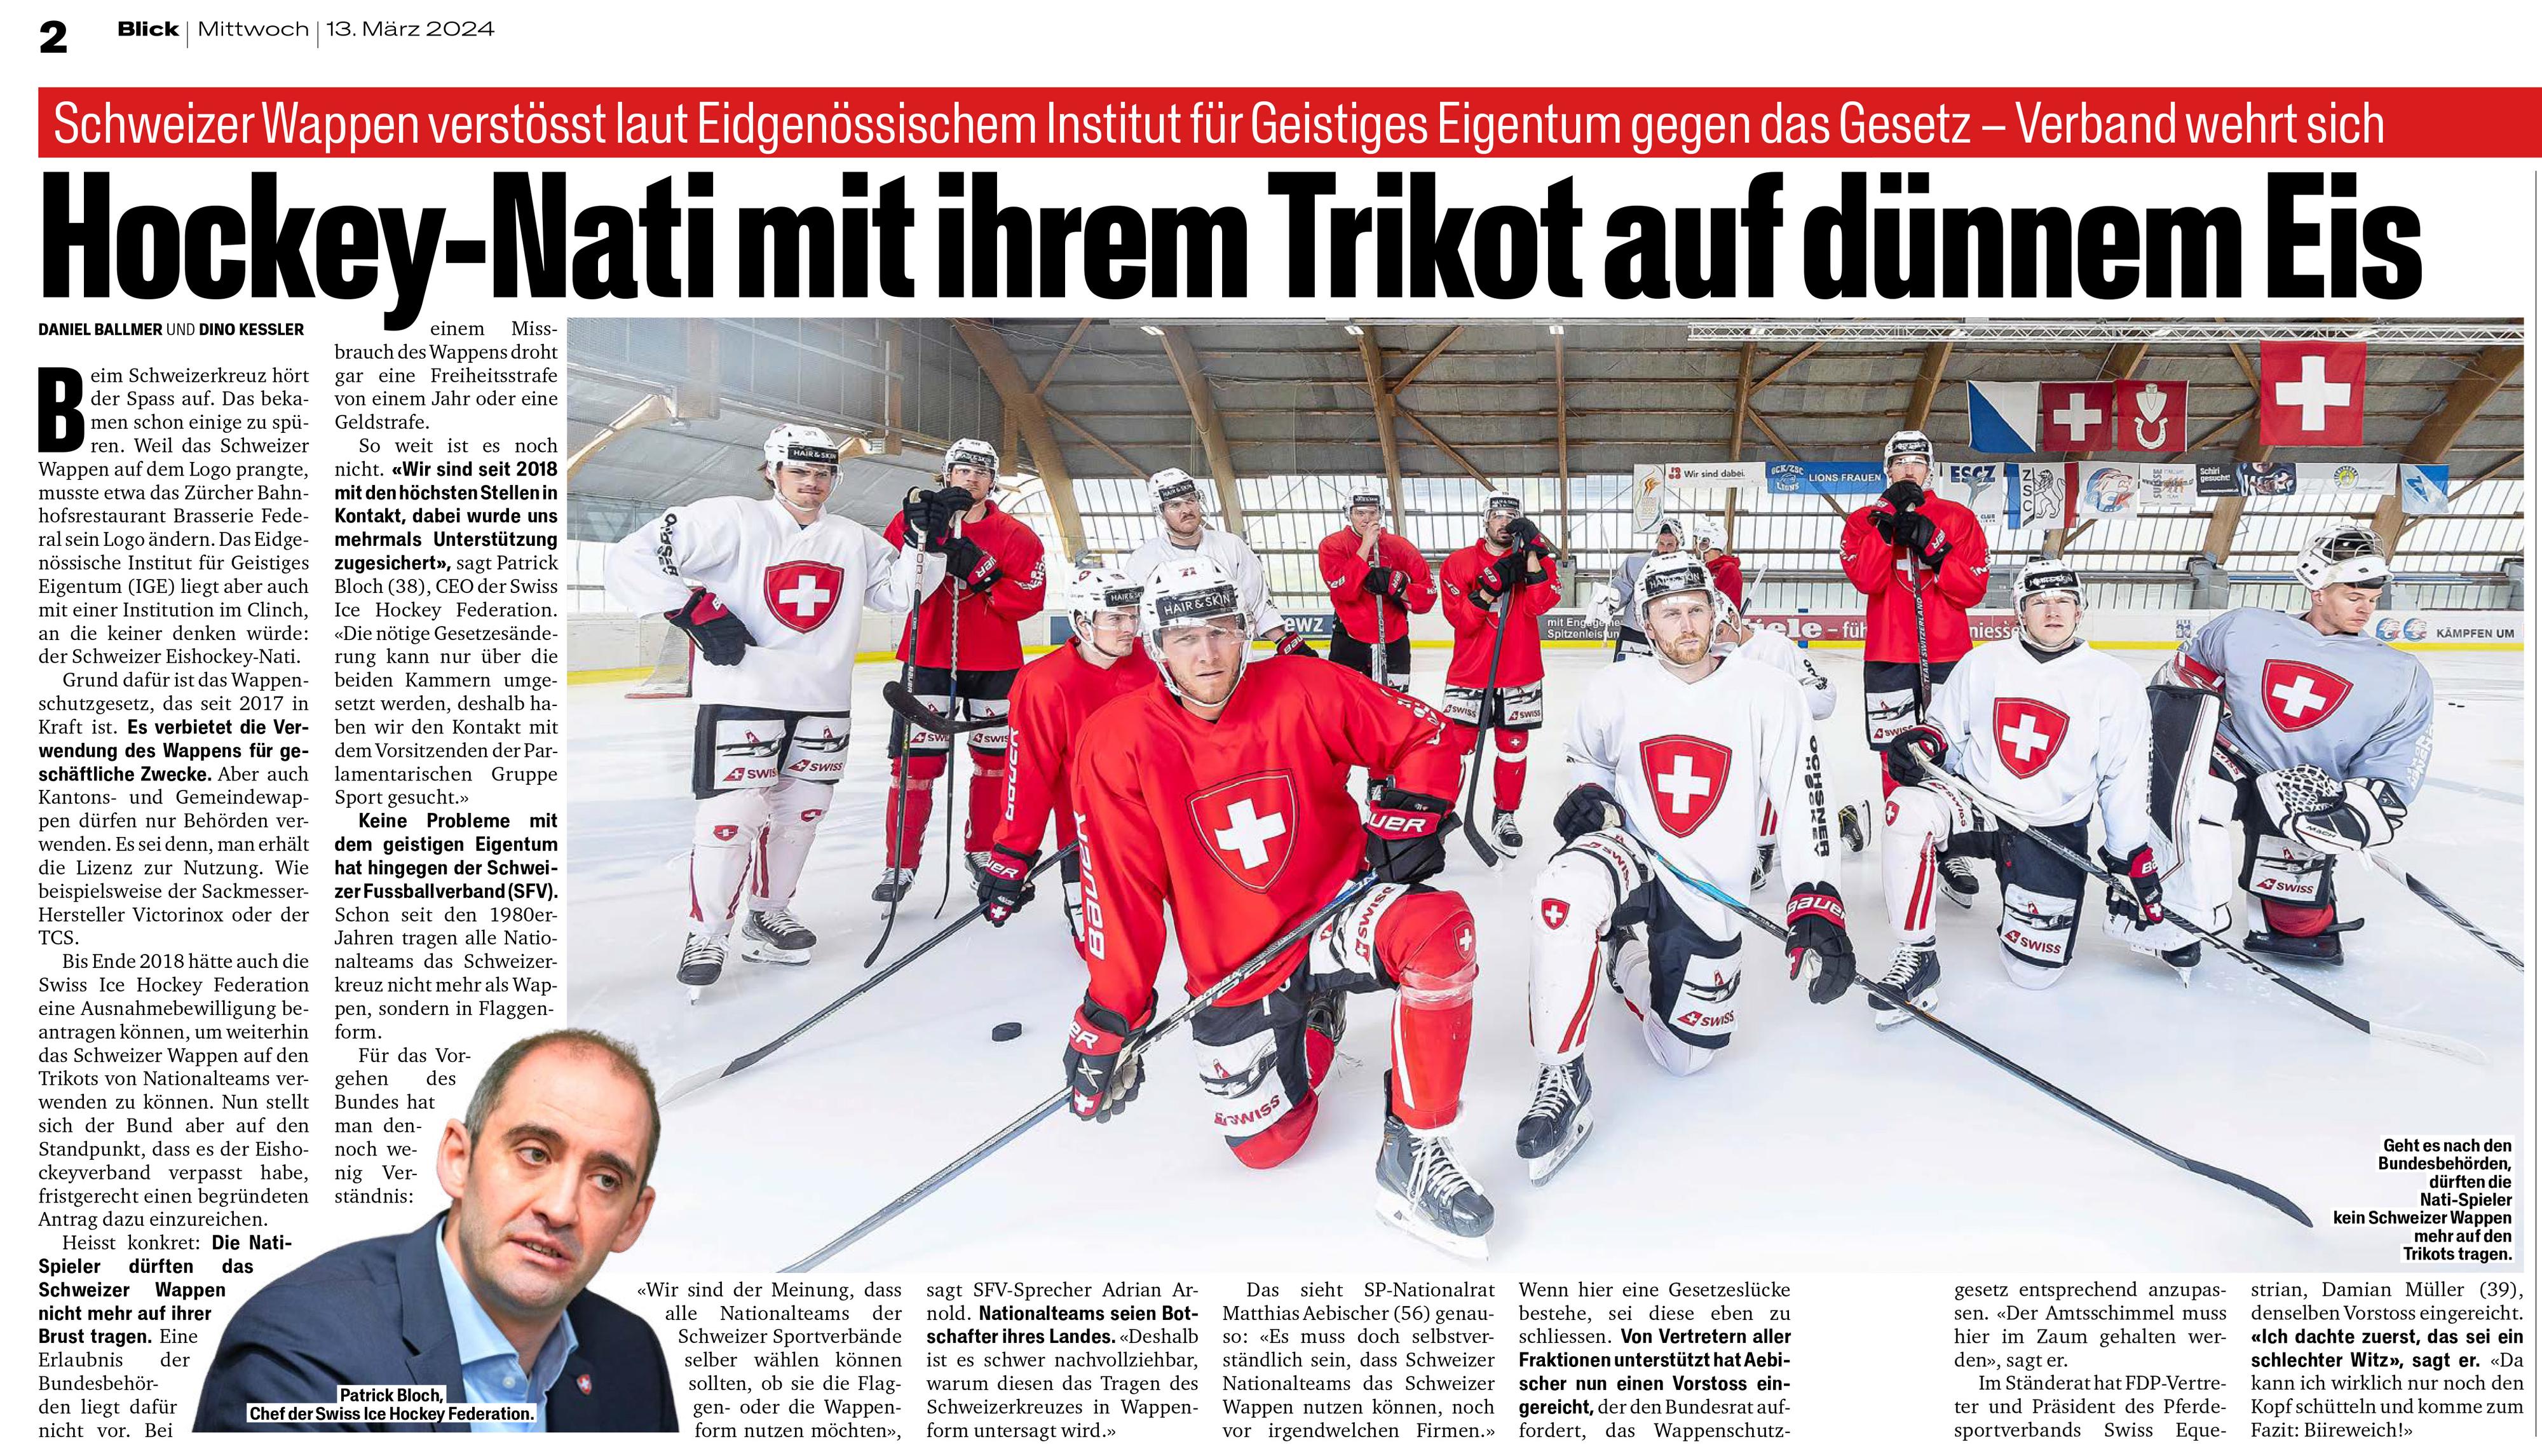 L'équipe suisse de hockey va devoir modifier son maillot. [Blick]